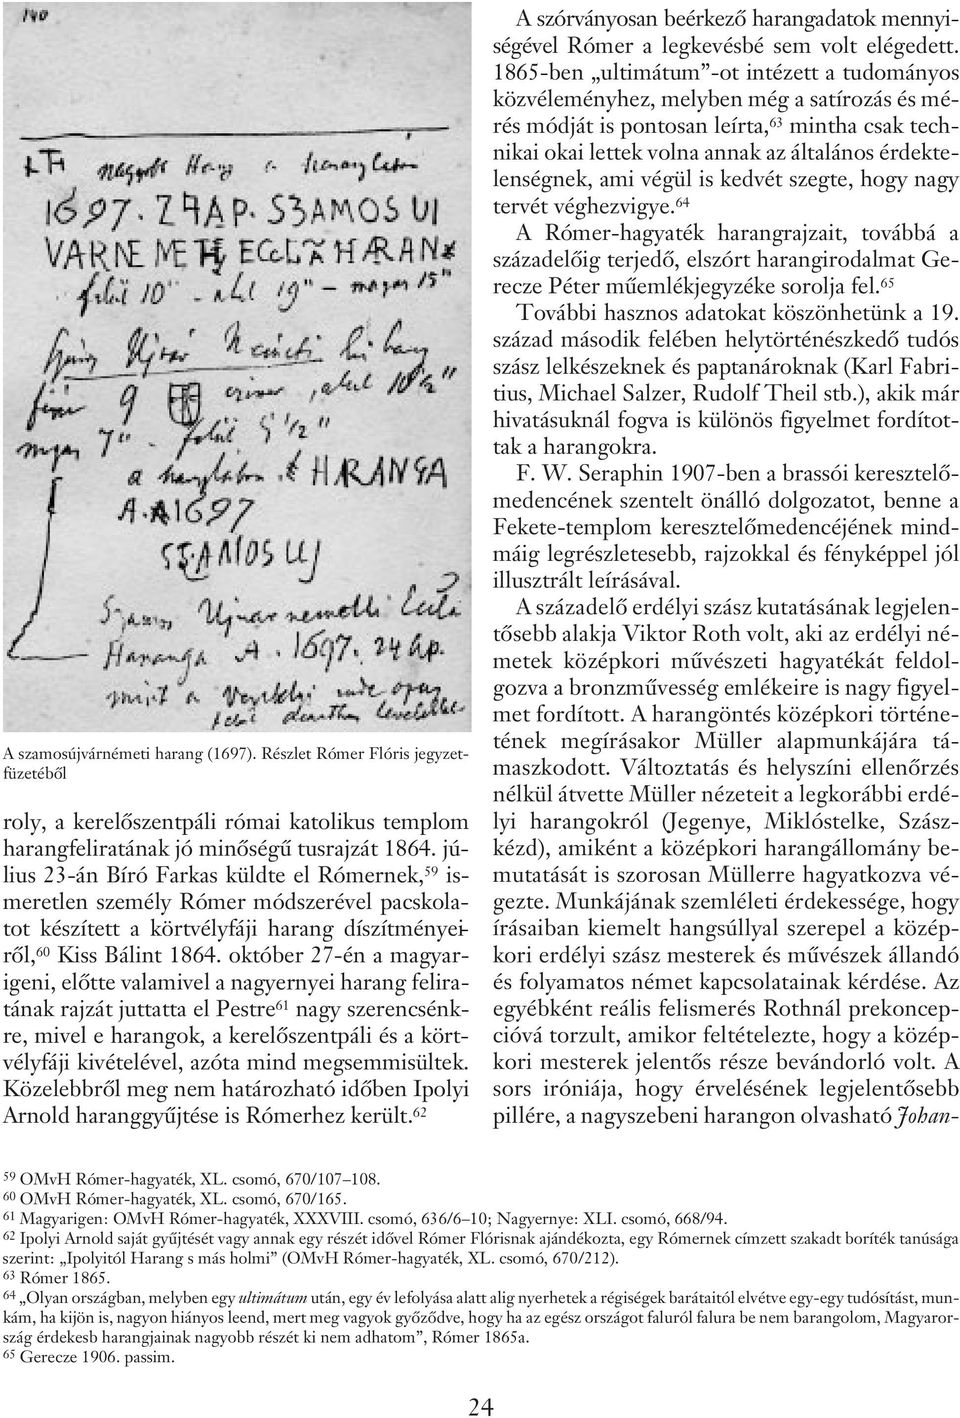 október 27-én a magyarigeni, elõtte valamivel a nagyernyei harang feliratának rajzát juttatta el Pestre 61 nagy szerencsénkre, mivel e harangok, a kerelõszentpáli és a körtvélyfáji kivételével, azóta